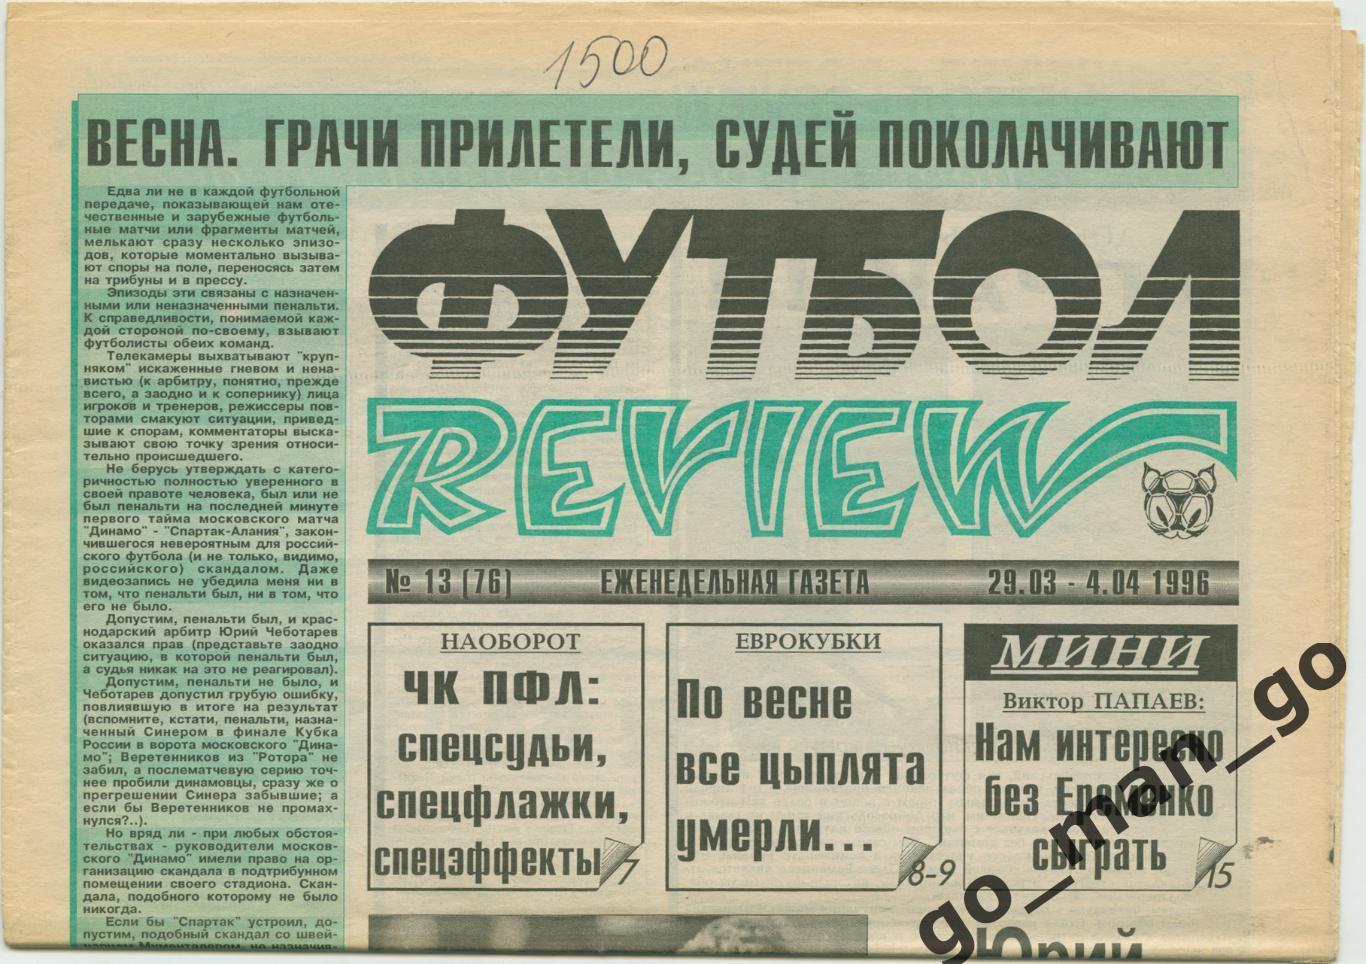 Еженедельник Футбол-Review (Футбол-Ревю), 29.03-04.04.1996, № 13.